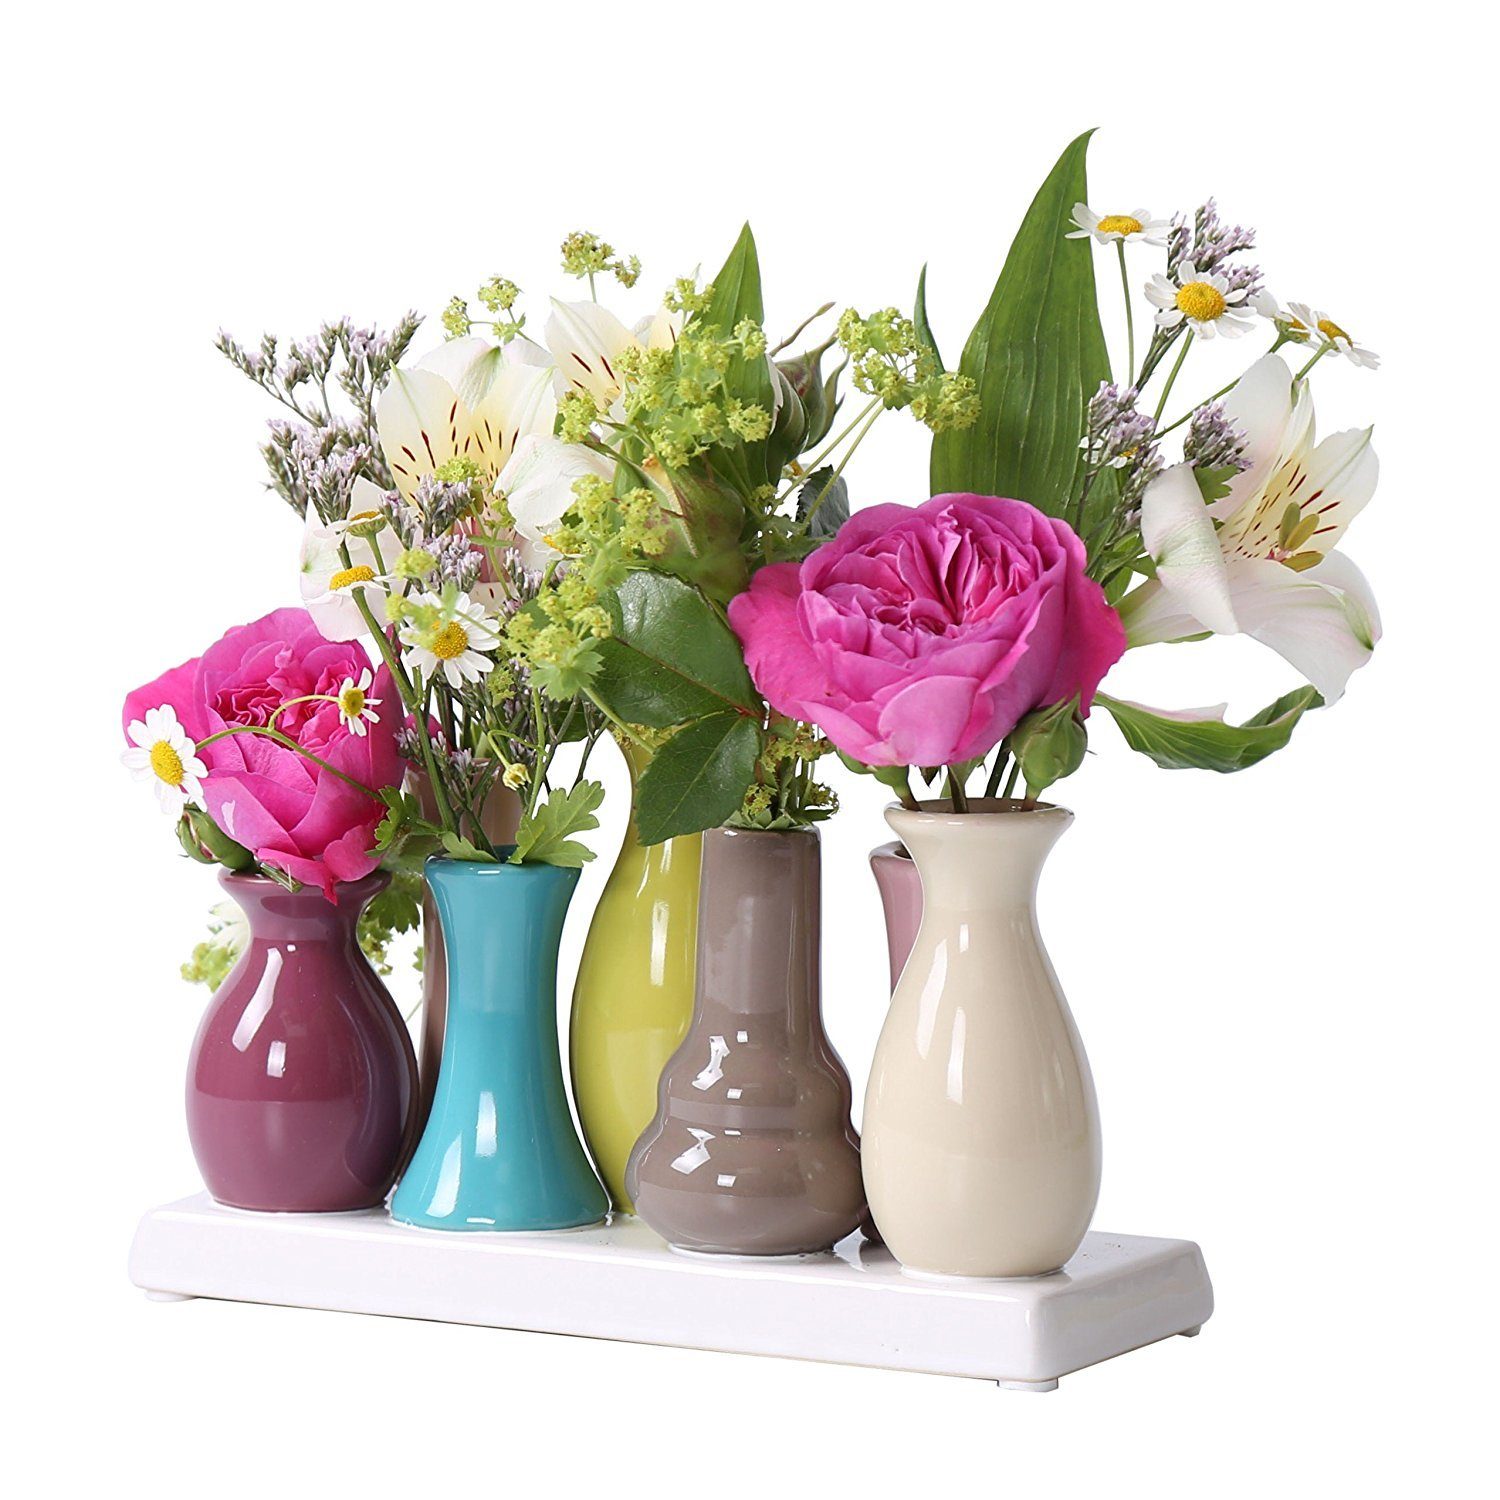 Jinfa Dekovase Handgefertigte kleine Keramik Deko Вази для квітів (7 Vasen Set Bunt), verbunden auf auf einem Tablett